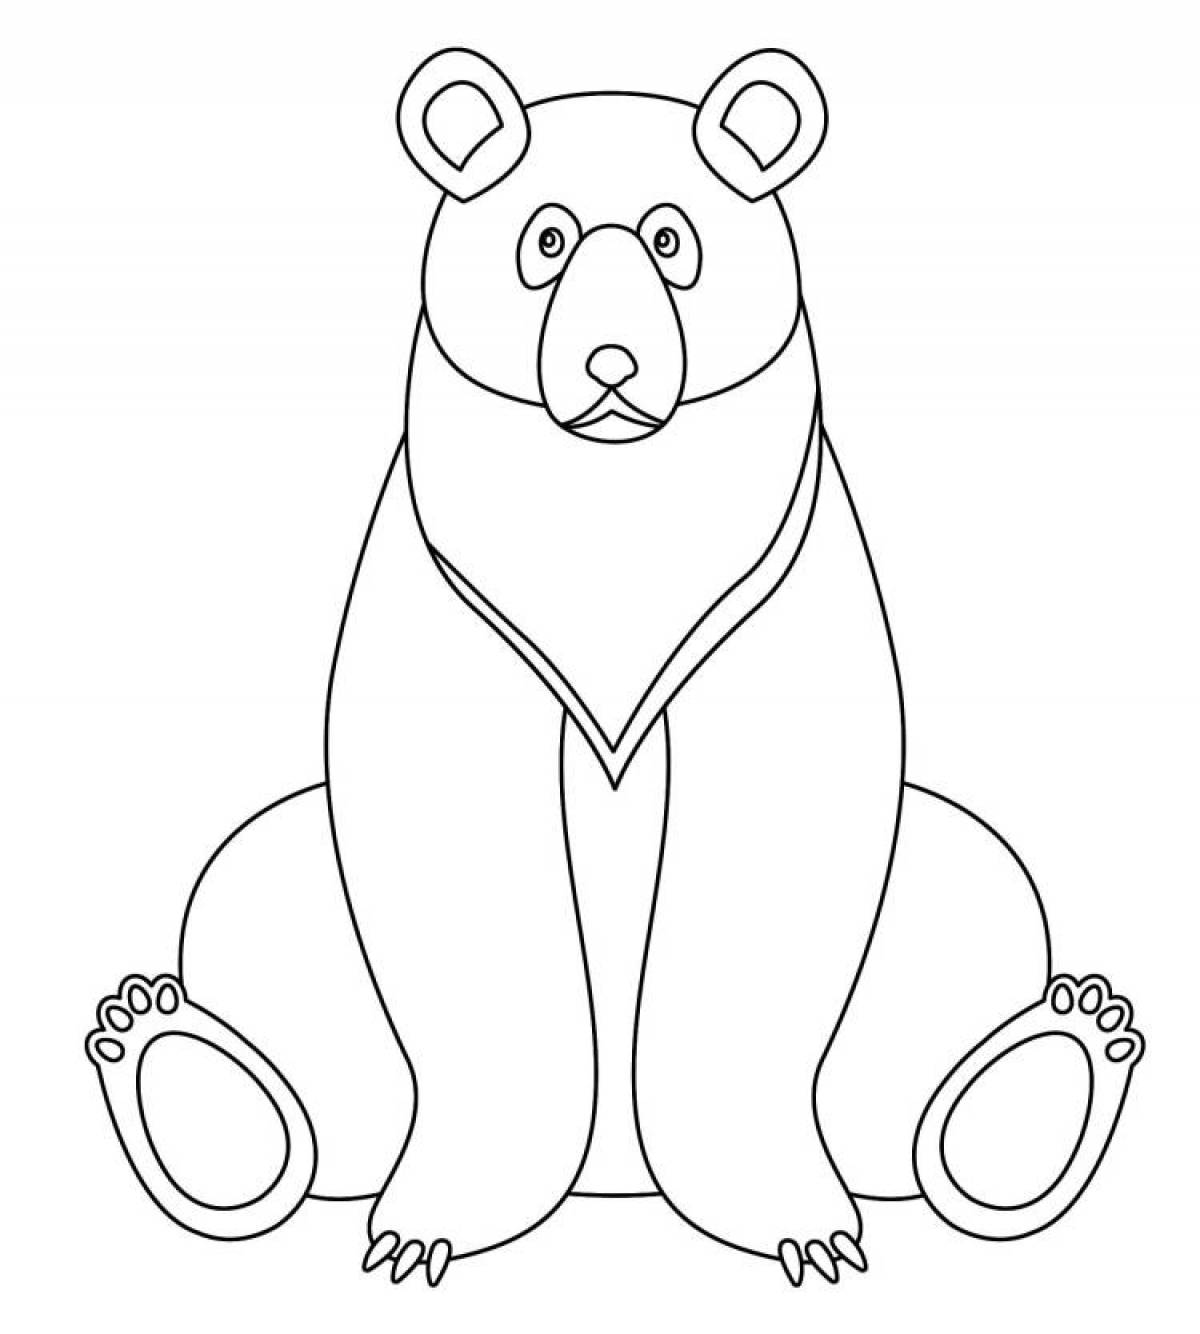 Сумасшедшая раскраска медвежонка для детей 3-4 лет